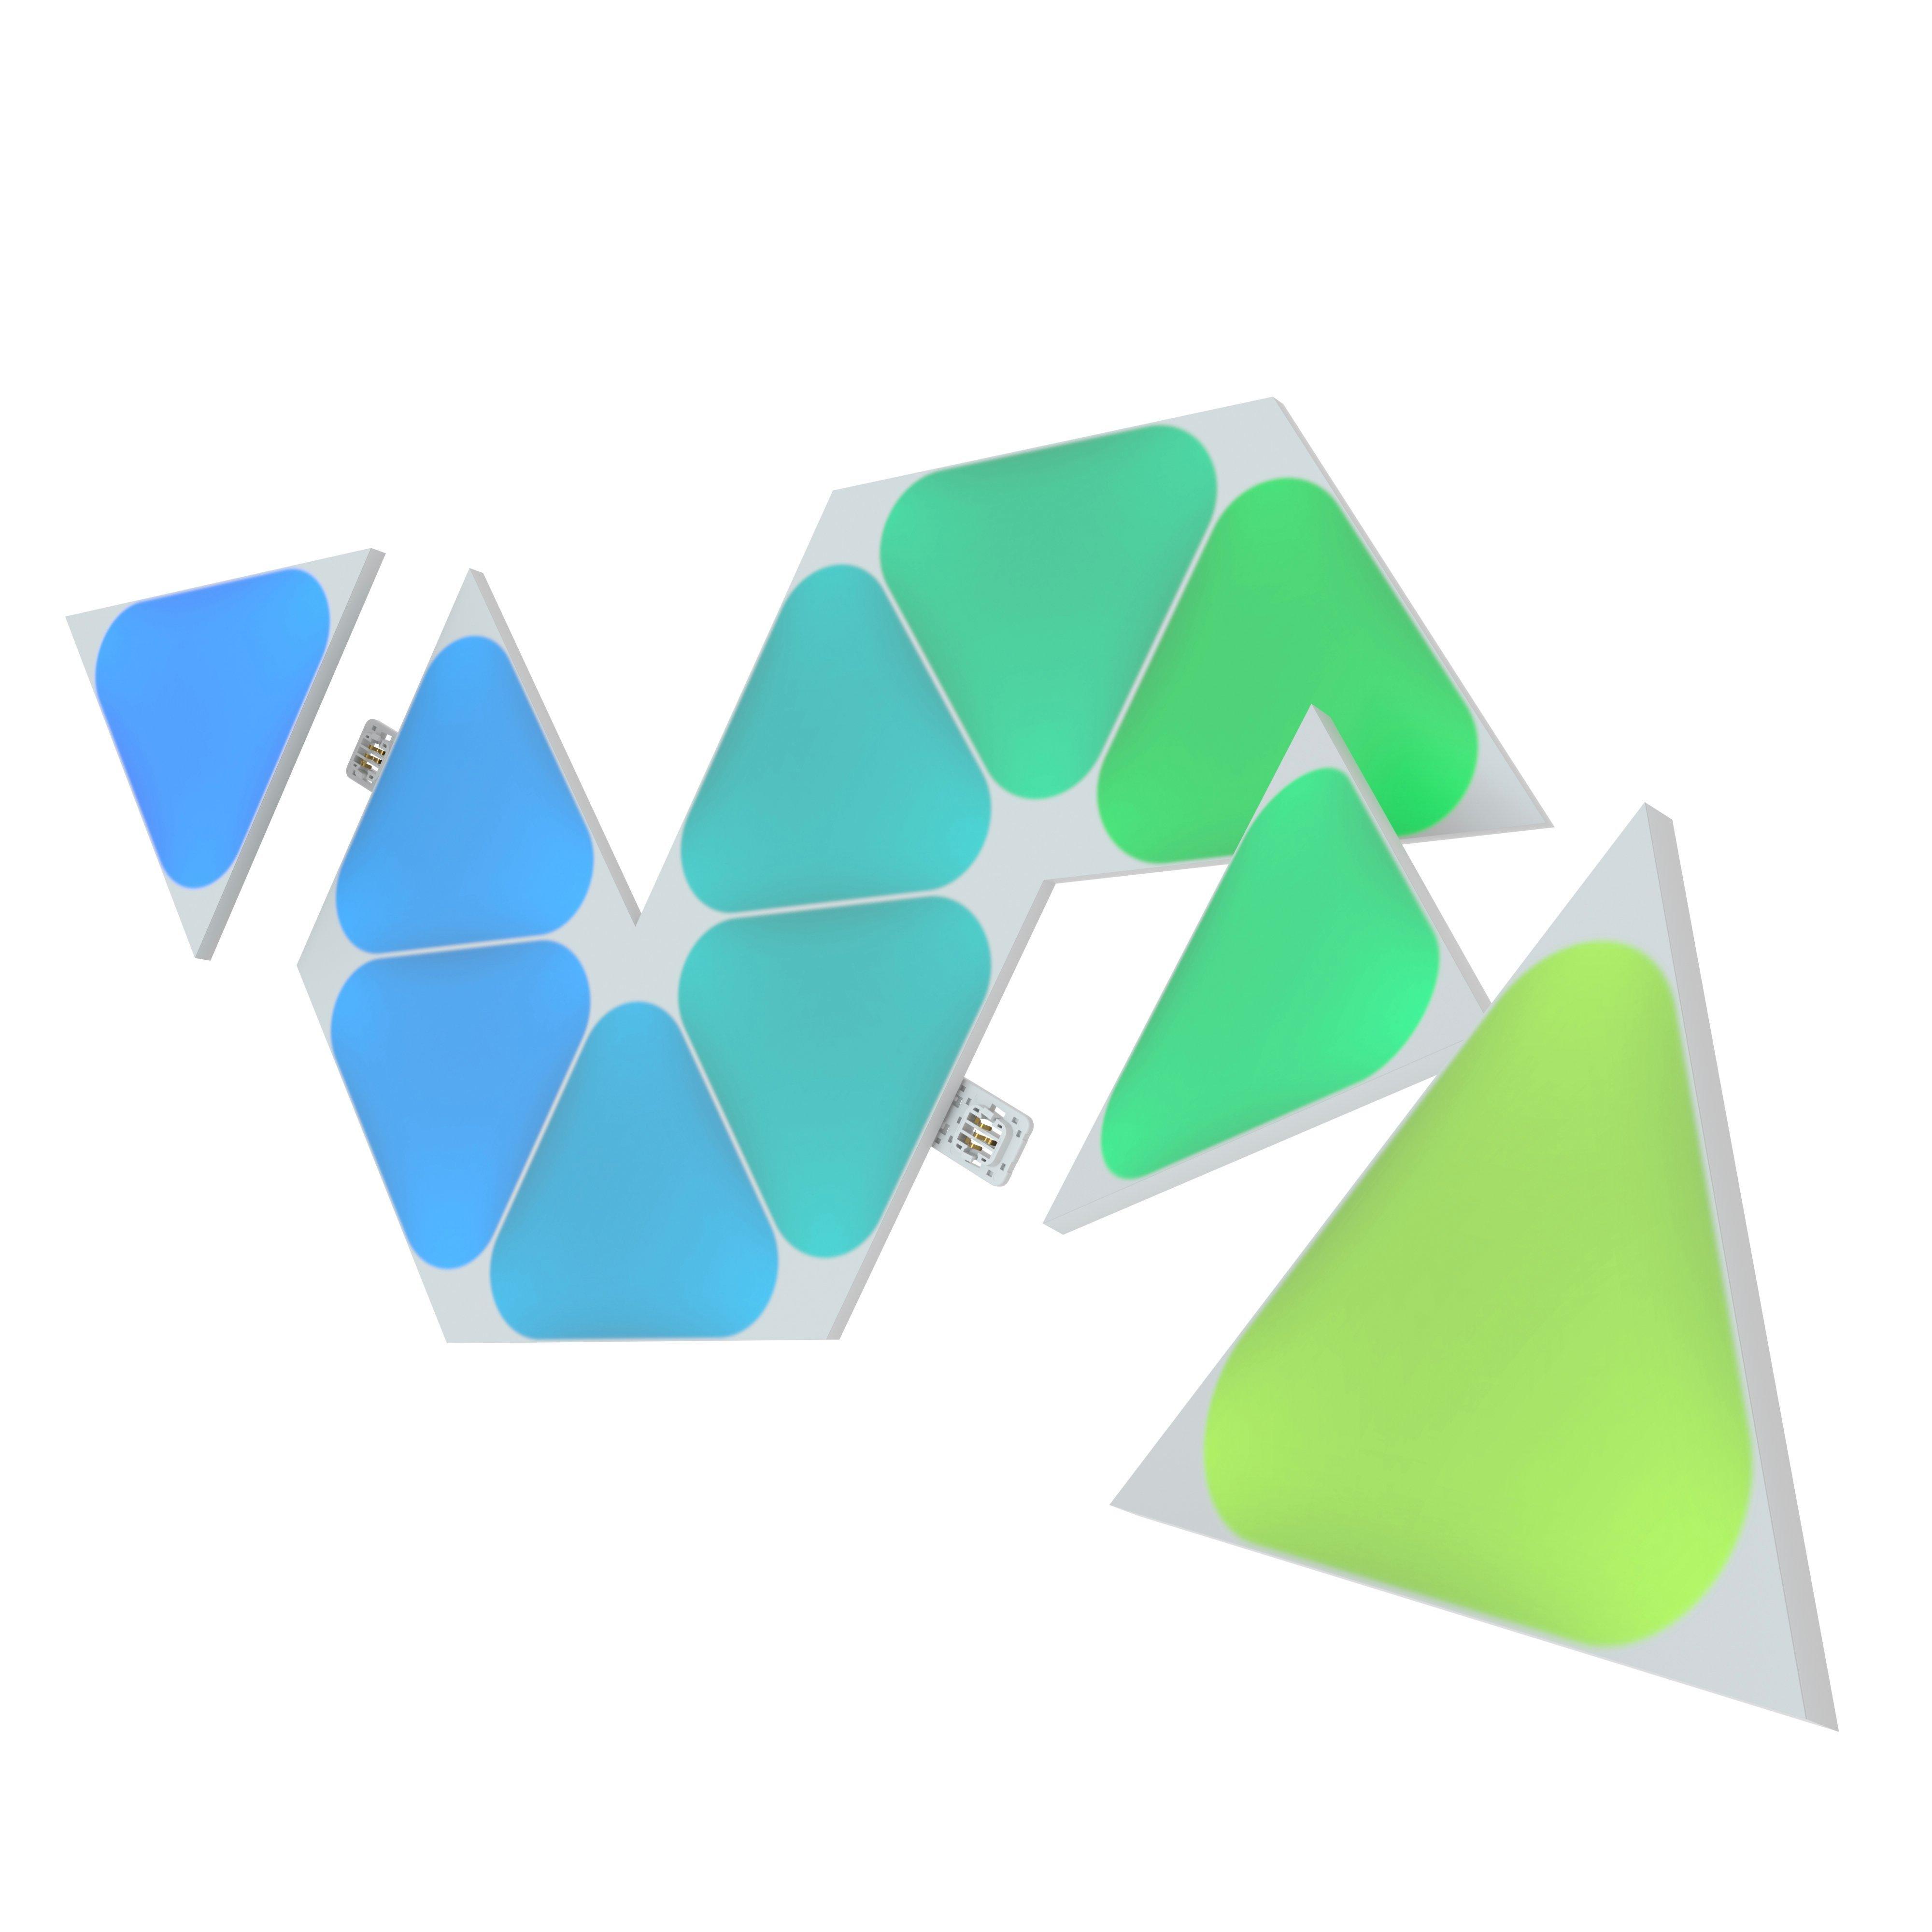 Shapes Expansion Pack | Triangles Panels Light Nanoleaf Pack 10 GameStop Mini